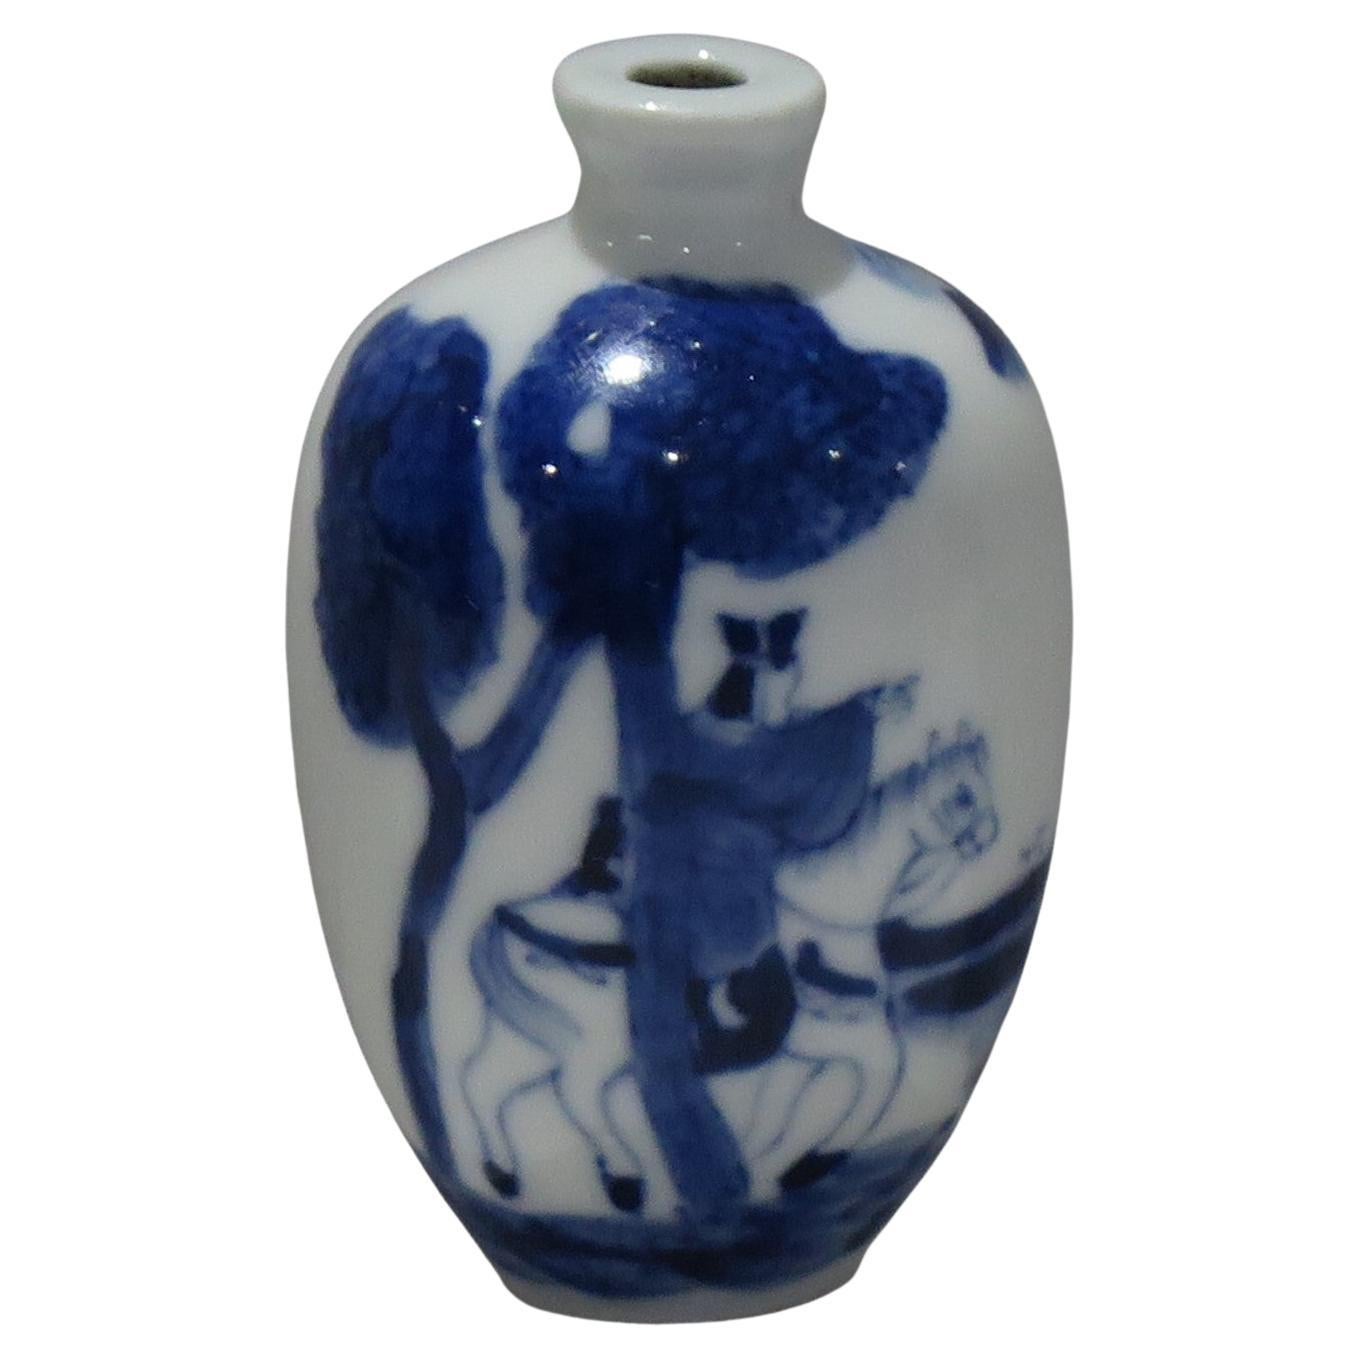 Chinesische Schnupftabakflasche aus Porzellan des 19. Jahrhunderts, blau-weiß handbemalt, Qing Xianfeng